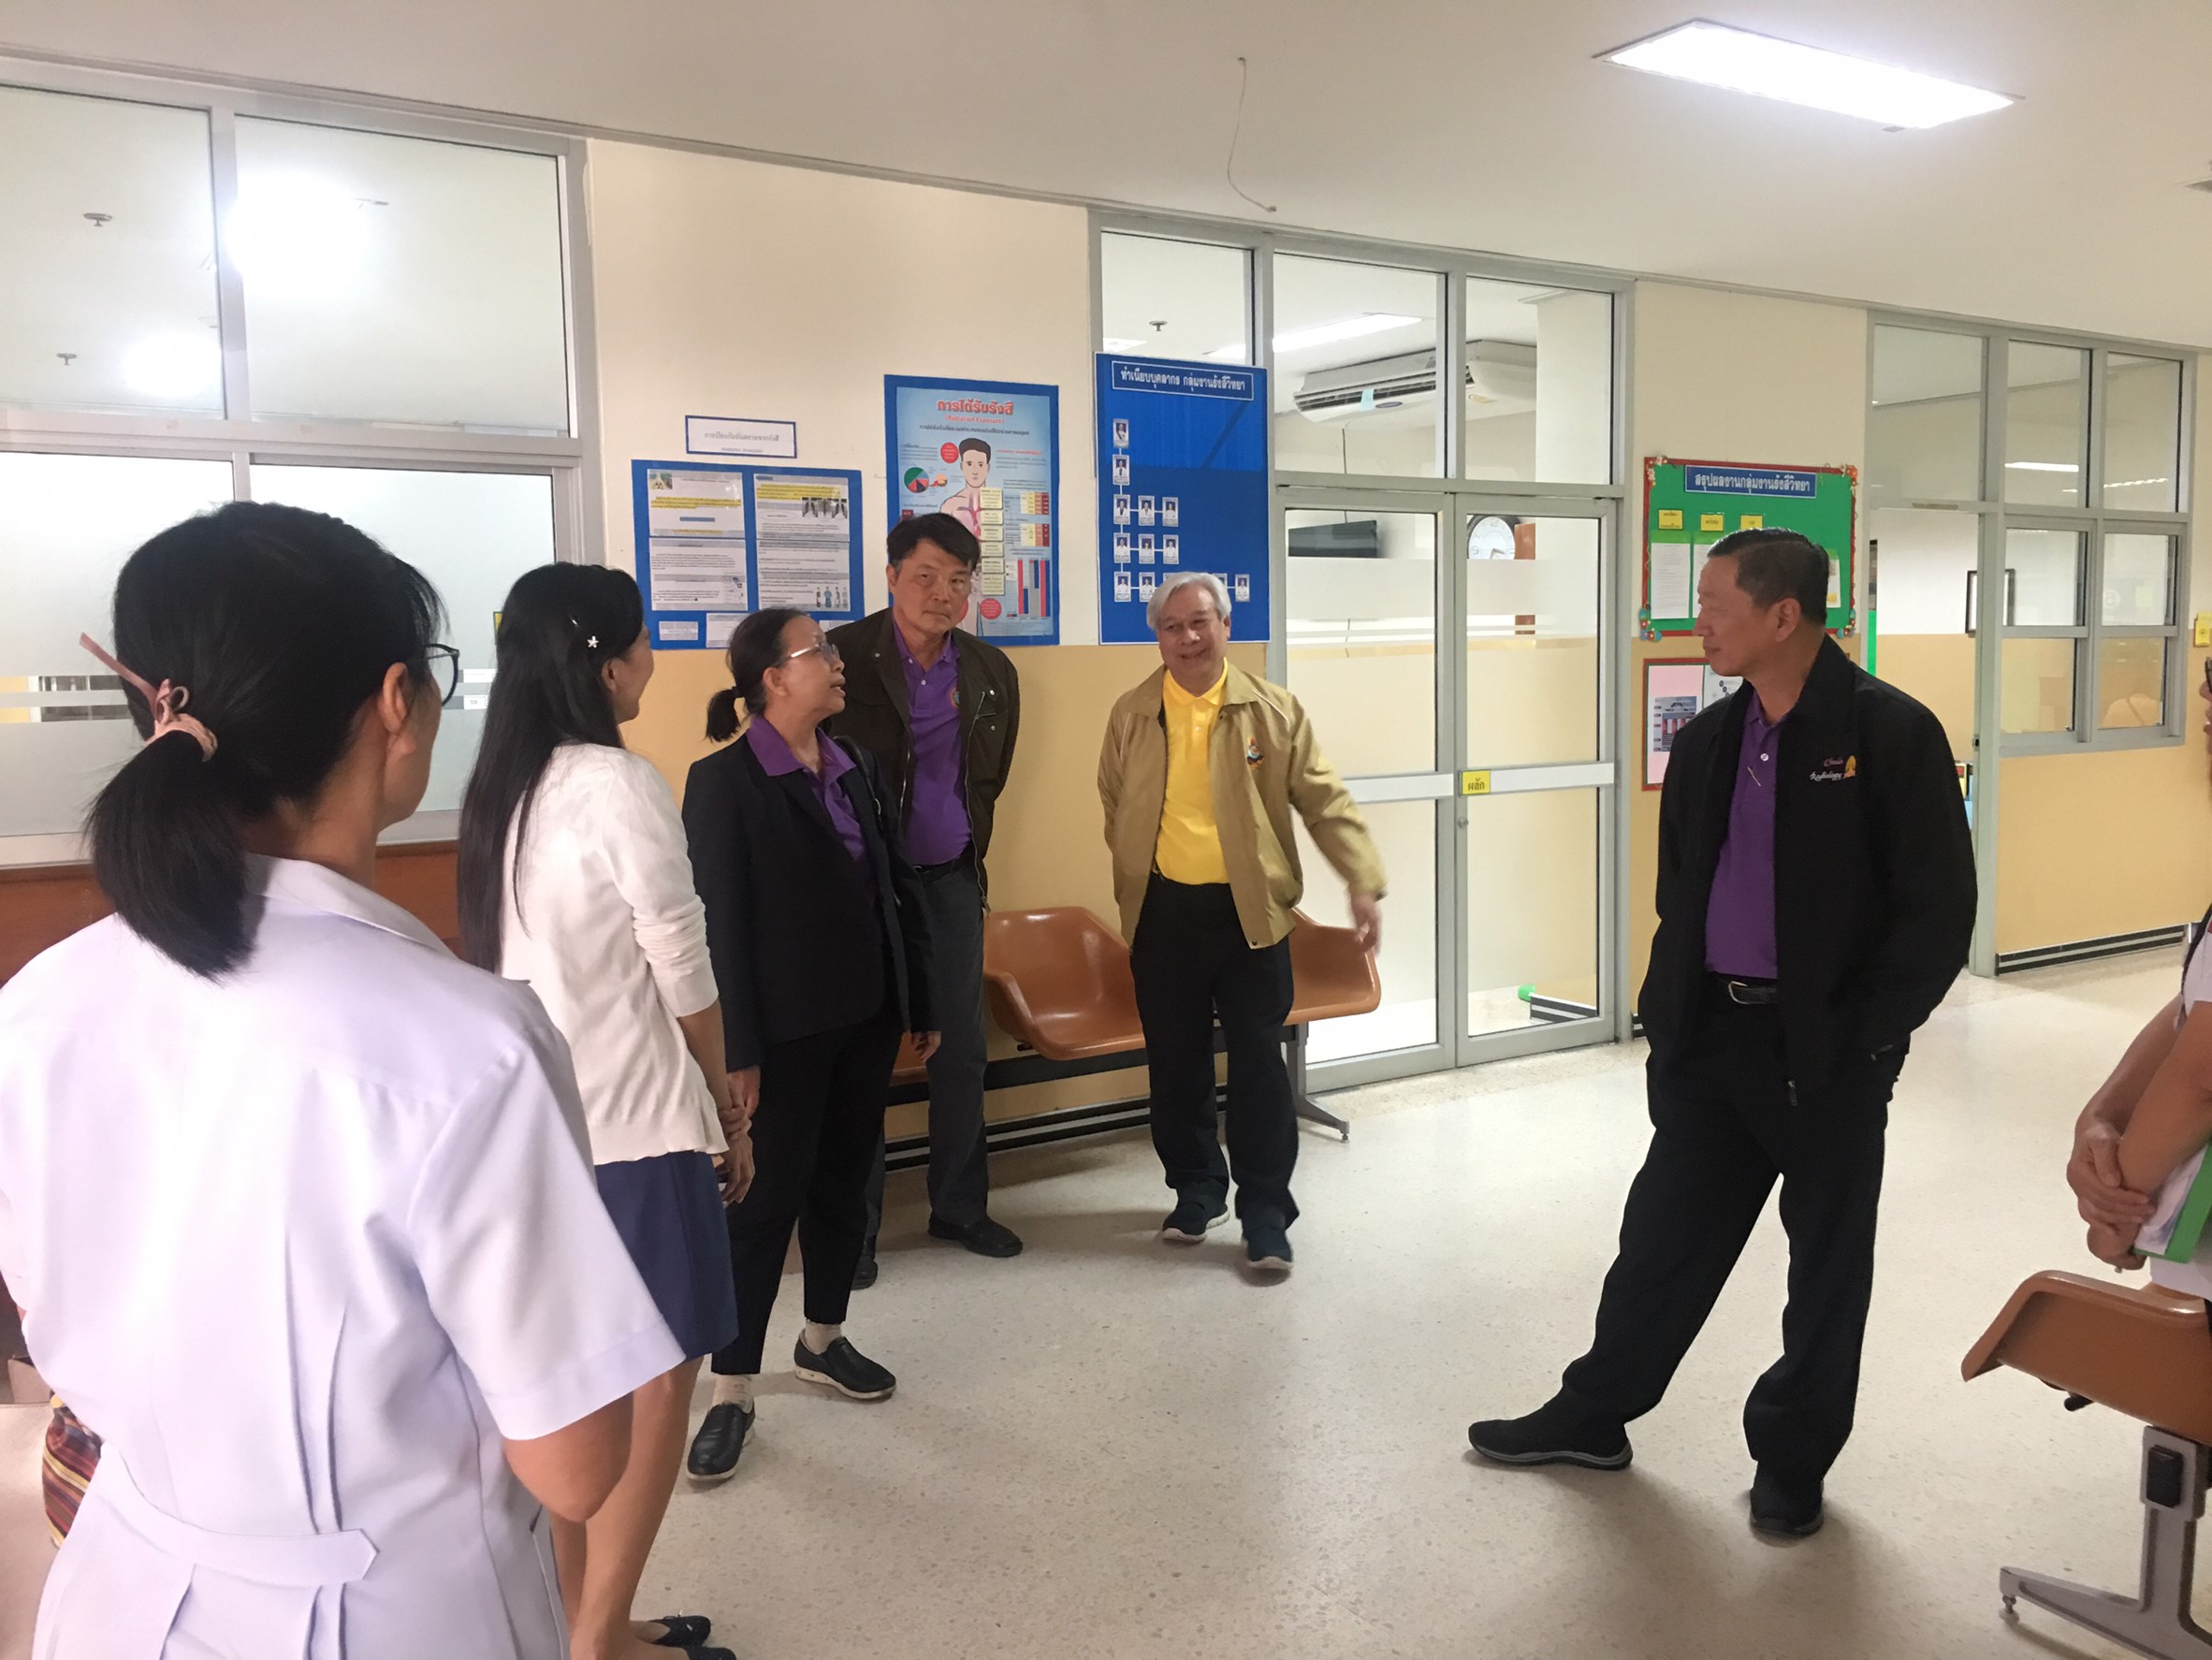 ประชุมวิชาการร่วมกับรังสีการแพทย์แห่งประเทศไทย ครั้งที่17 27-29 พ.ย. - พร้อมเข้าเยี่ยมและให้กำลังใจหน่วยงานรังสีวิทยาในพื้นที่จังหวัดอุบลราชธานีระหว่างวันที่ 25-26 พฤศจิกายน 2562 75